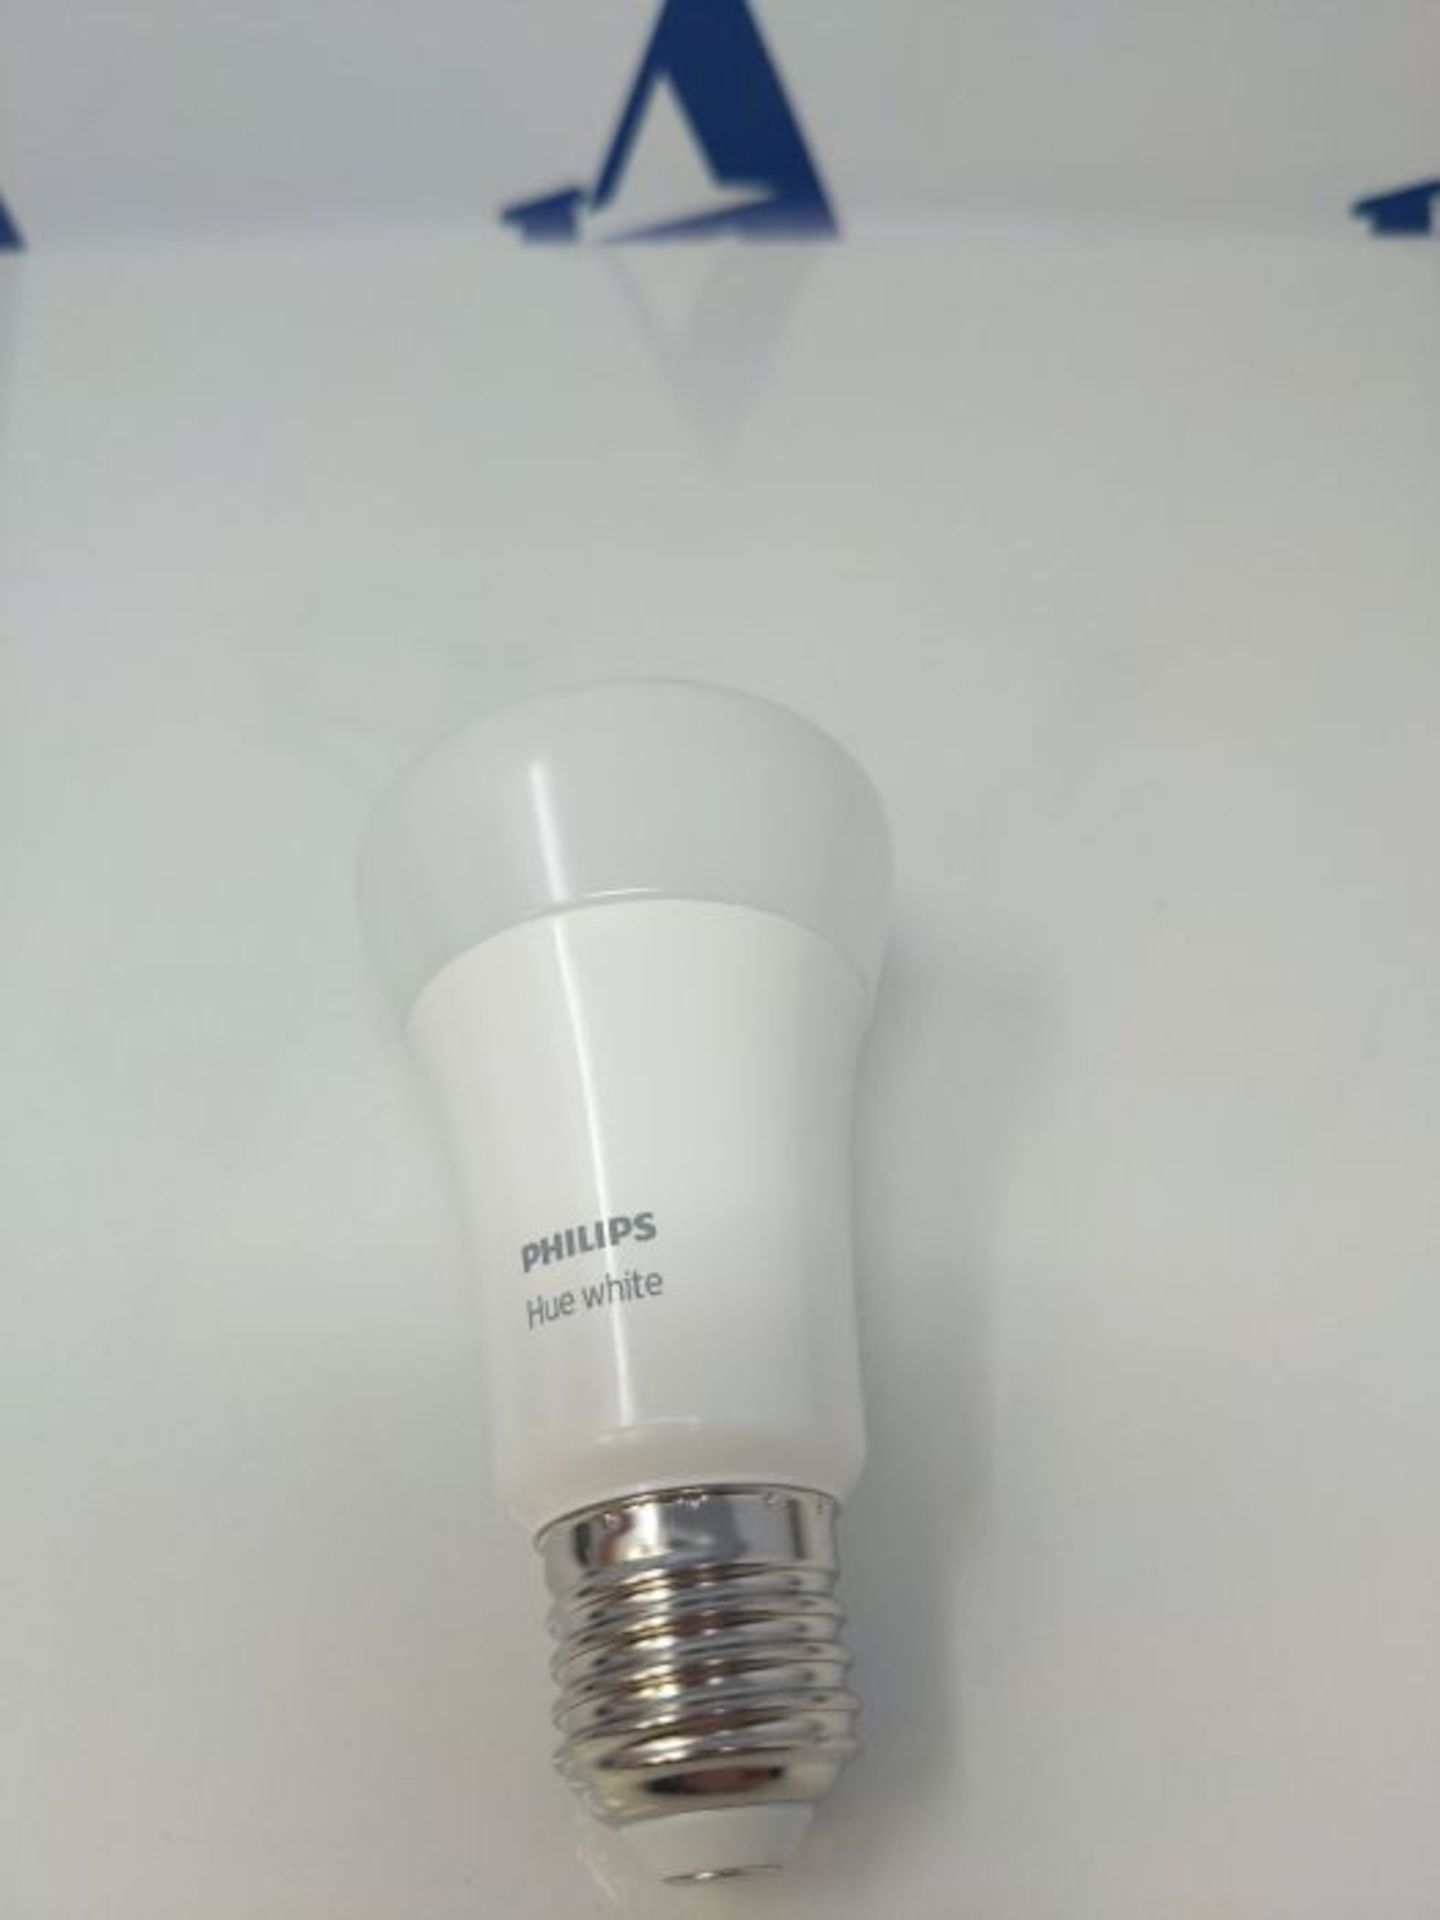 Philips Hue White E27 LED Lampe Einzelpack, dimmbar, warmweiÃxes Licht, steuerbar vi - Image 3 of 3